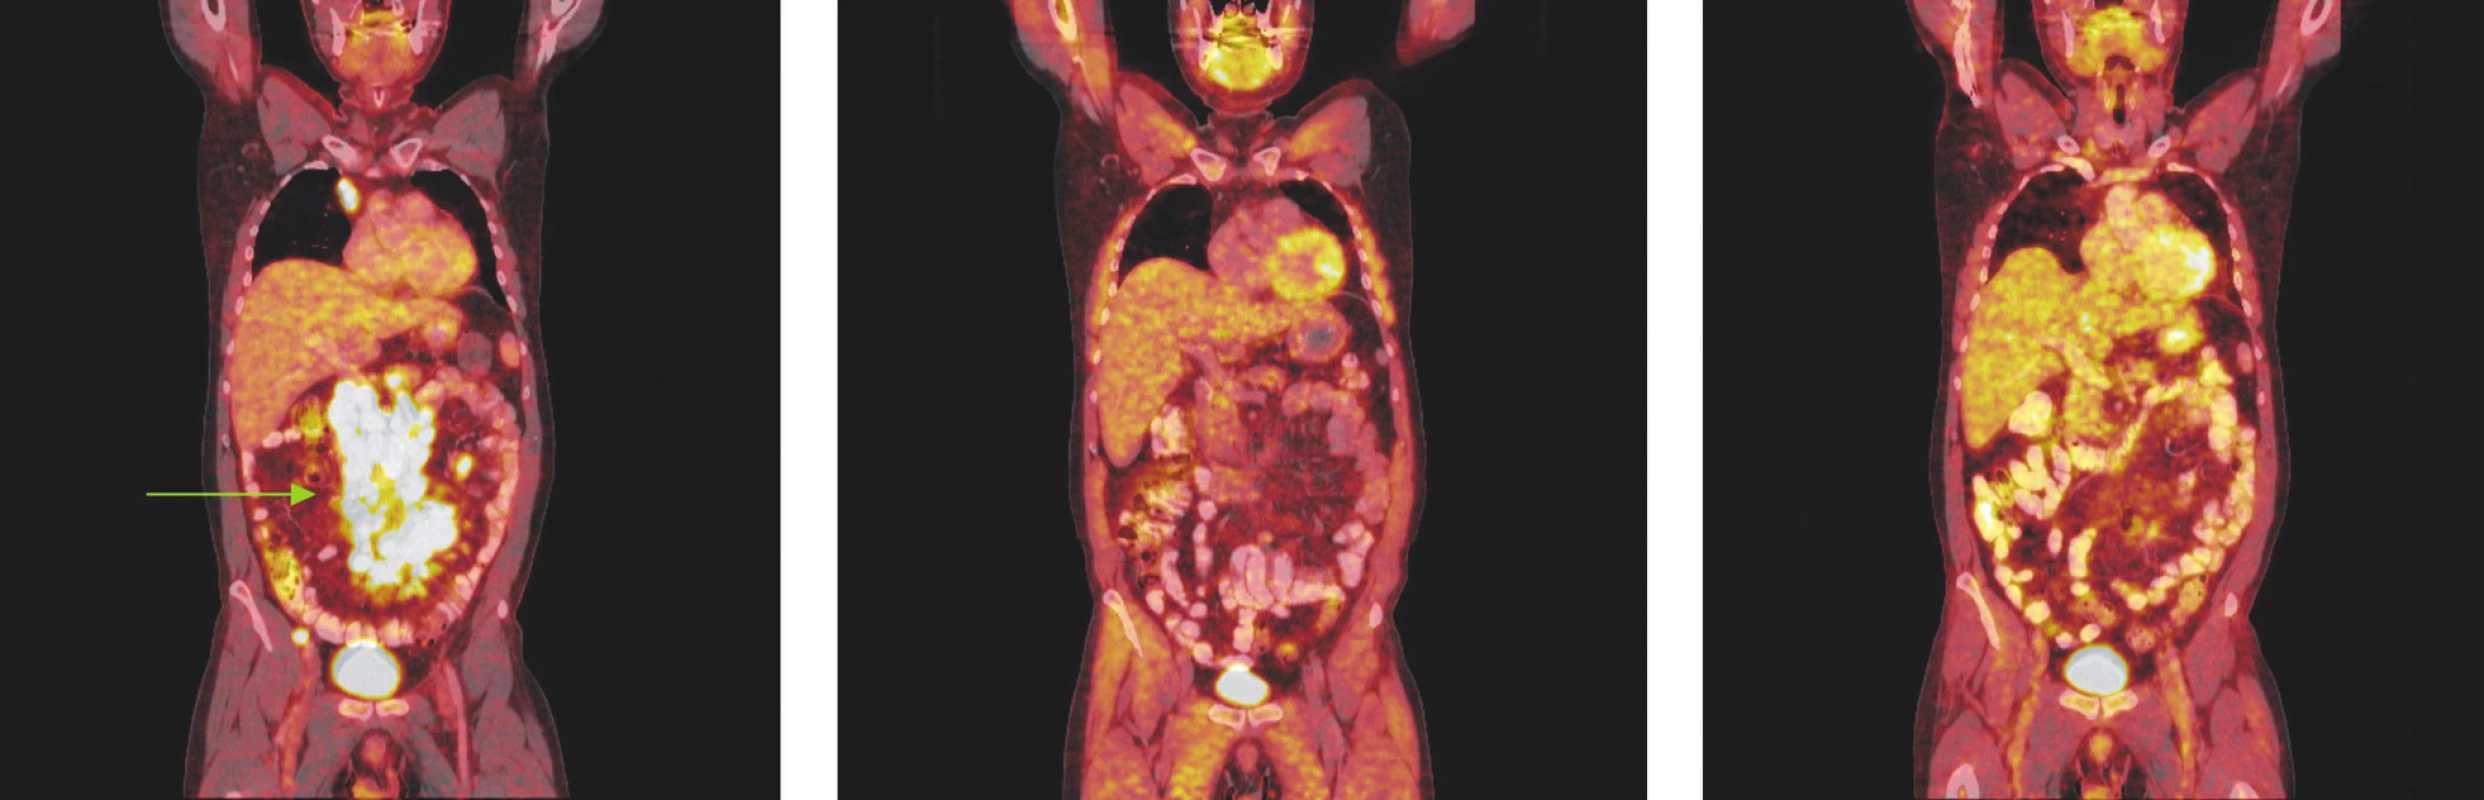 Série PET/CT snímků u nemocného s difuzním B-velkobuněčným lymfomem před léčbou, po 2 cyklech léčby a po ukončení léčby. První snímek ukazuje mnohočetná ložiska hypermetabolismu glukózy ve zvětšených lymfatických uzlinách infraklavikulárně a v dutině břišní kolem břišní aorty a v mezenteriu a kolem pánevních cév. Po 2 cyklech léčby došlo ke zmenšení všech lymfatických uzlin, žádná nevykazuje hypermetabolismus glukózy a po skončení léčby je patrná normalizace velikosti lymfatických uzlin, všechny bez hypermetabolismu glukózy.